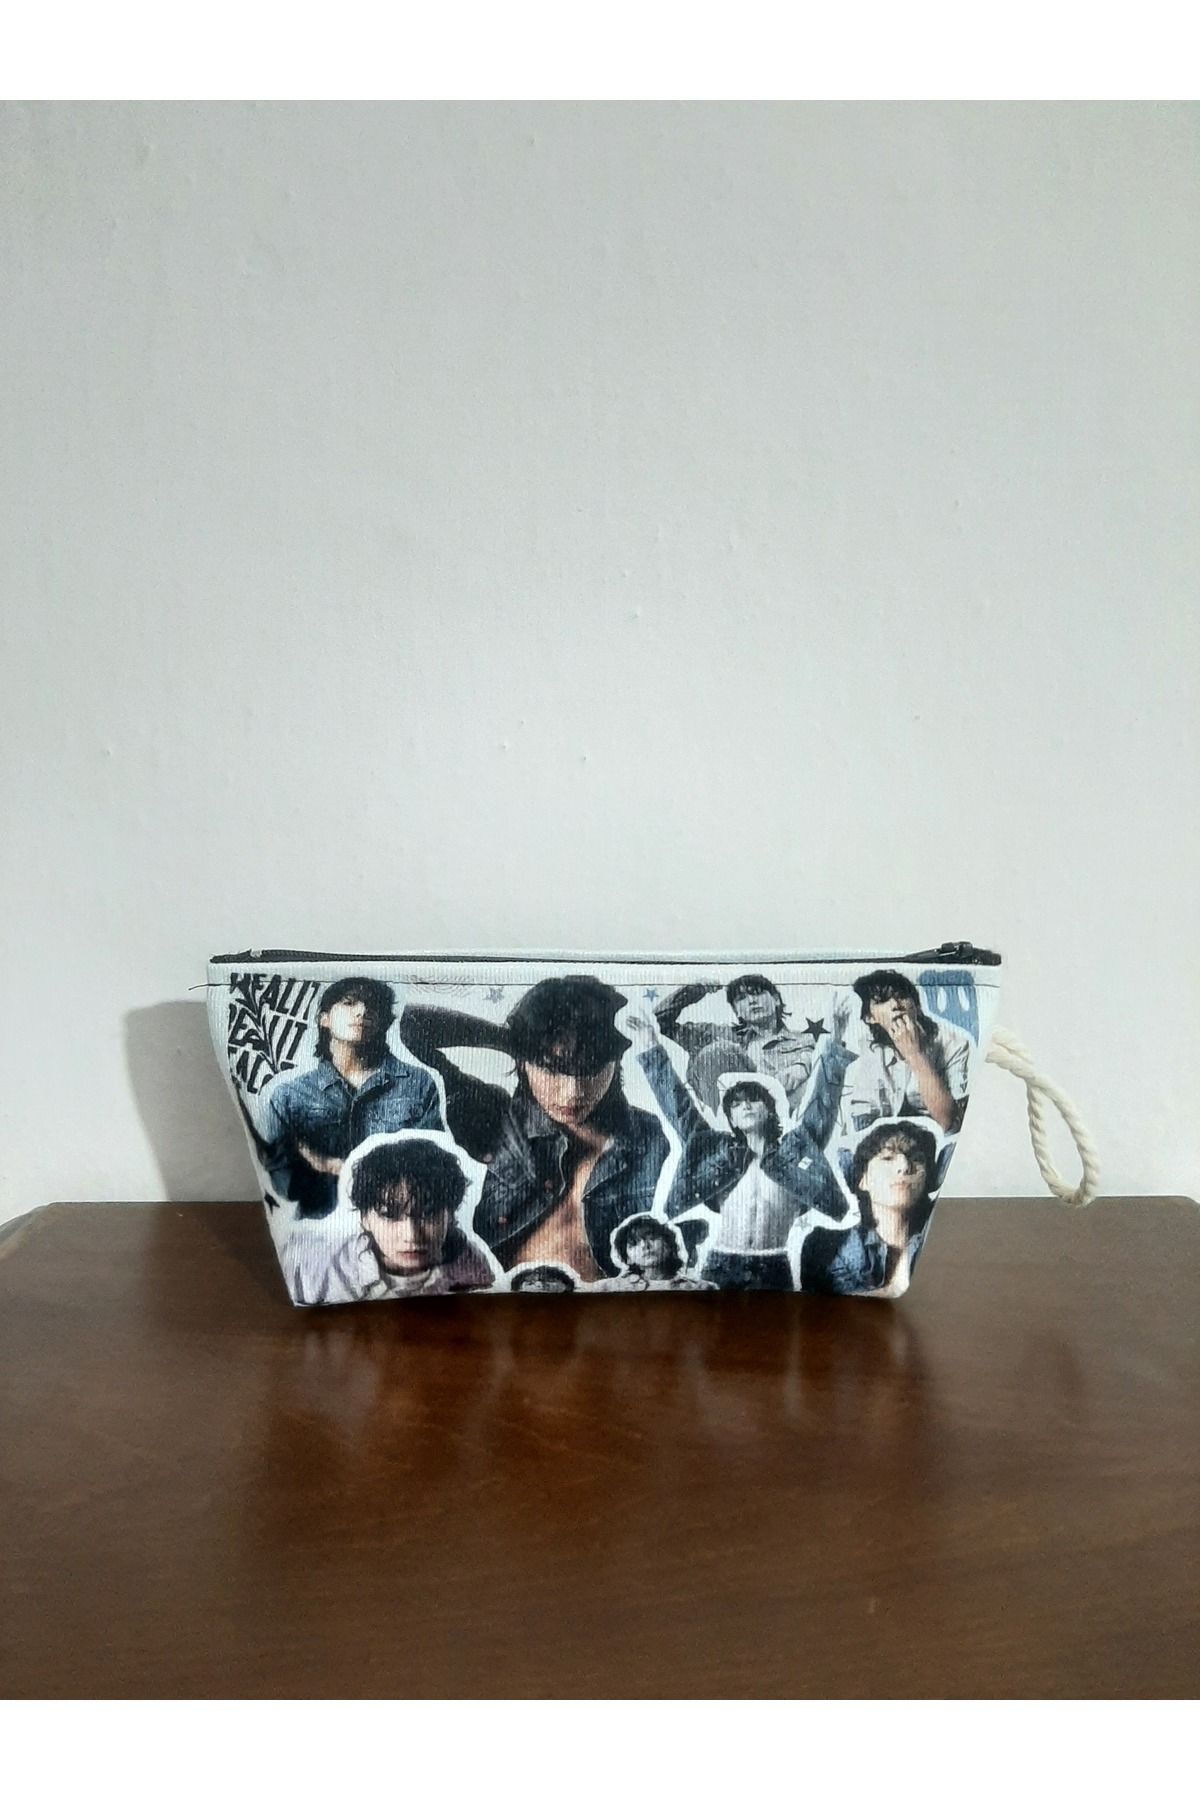 owl bag KPOP - BTS - Jungkook kolaj desenli kalemlik - makyaj çantası